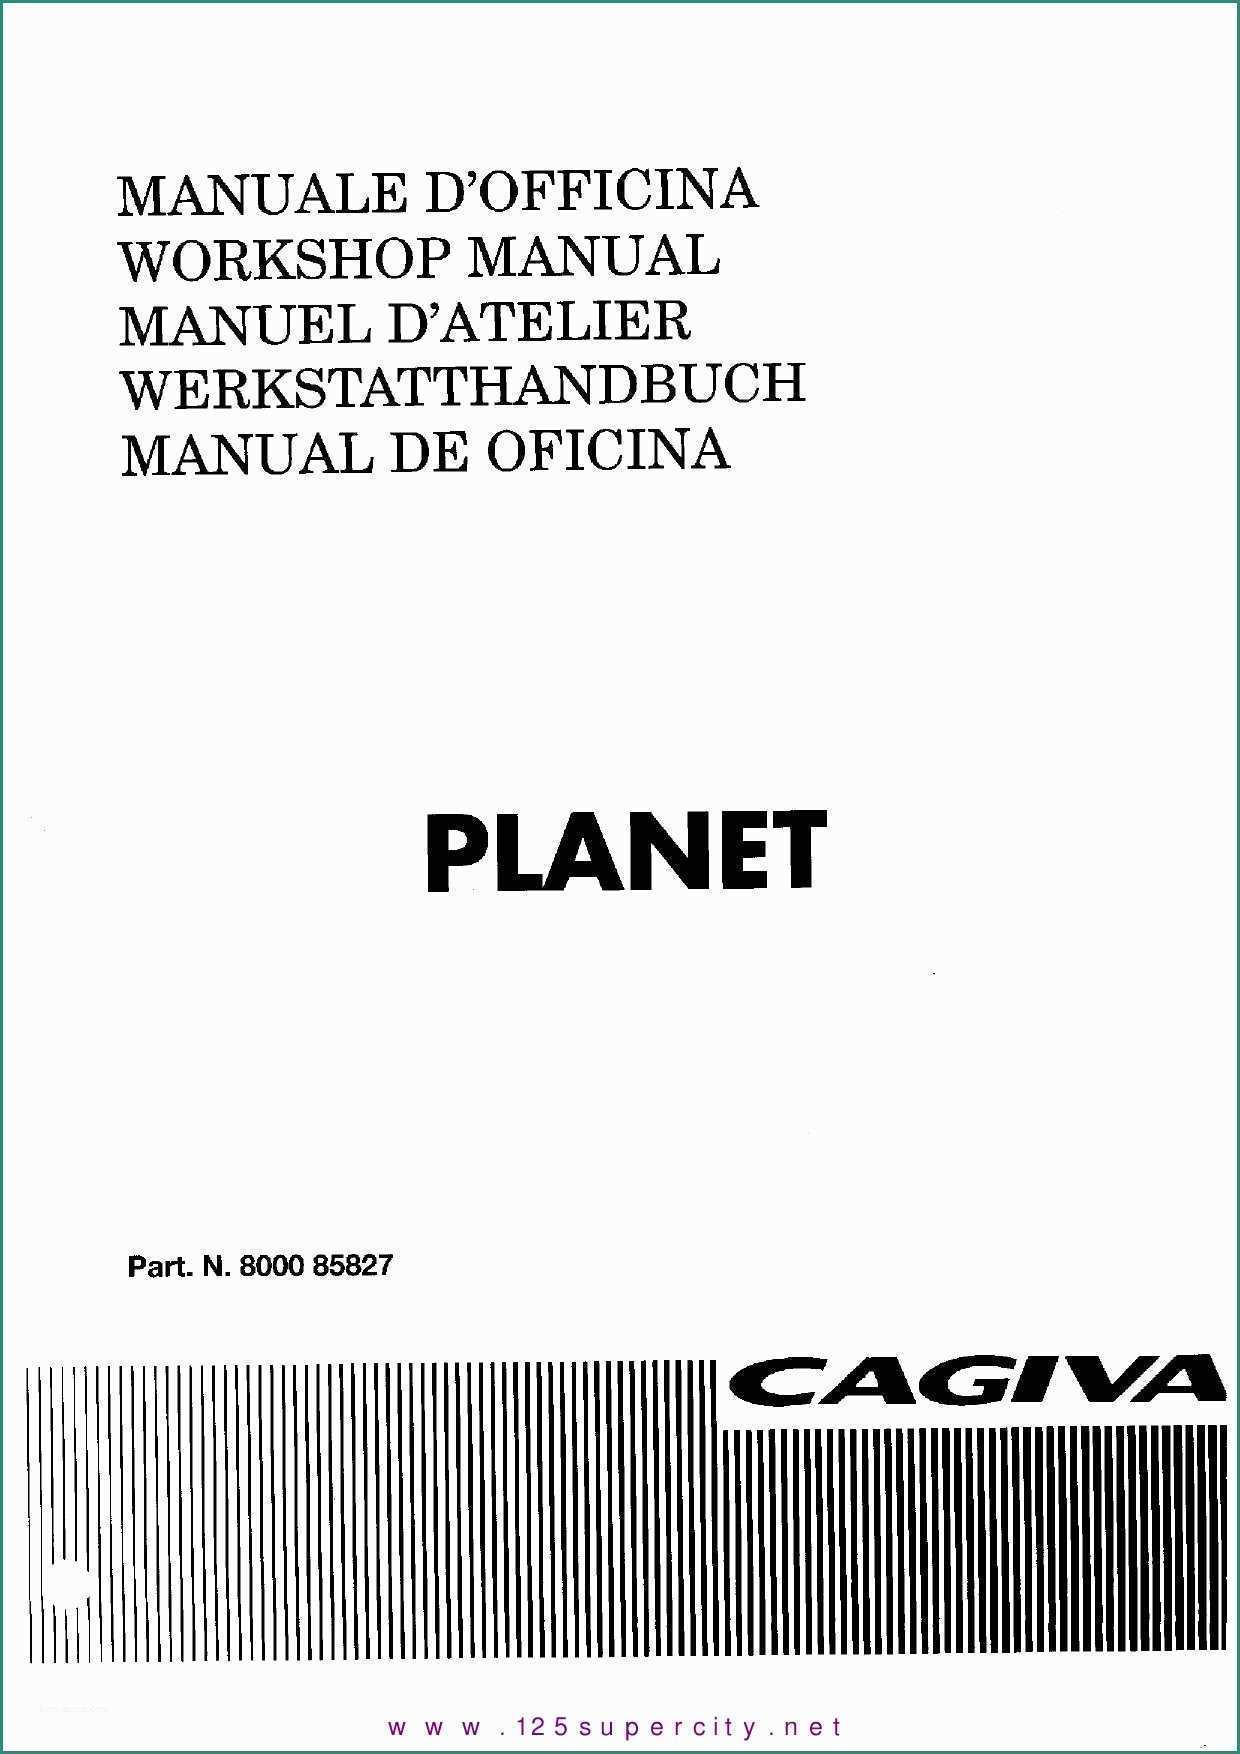 Serbatoio Acqua Litri Dimensioni E Manual Cagiva Planet by Christ Cfouq issuu